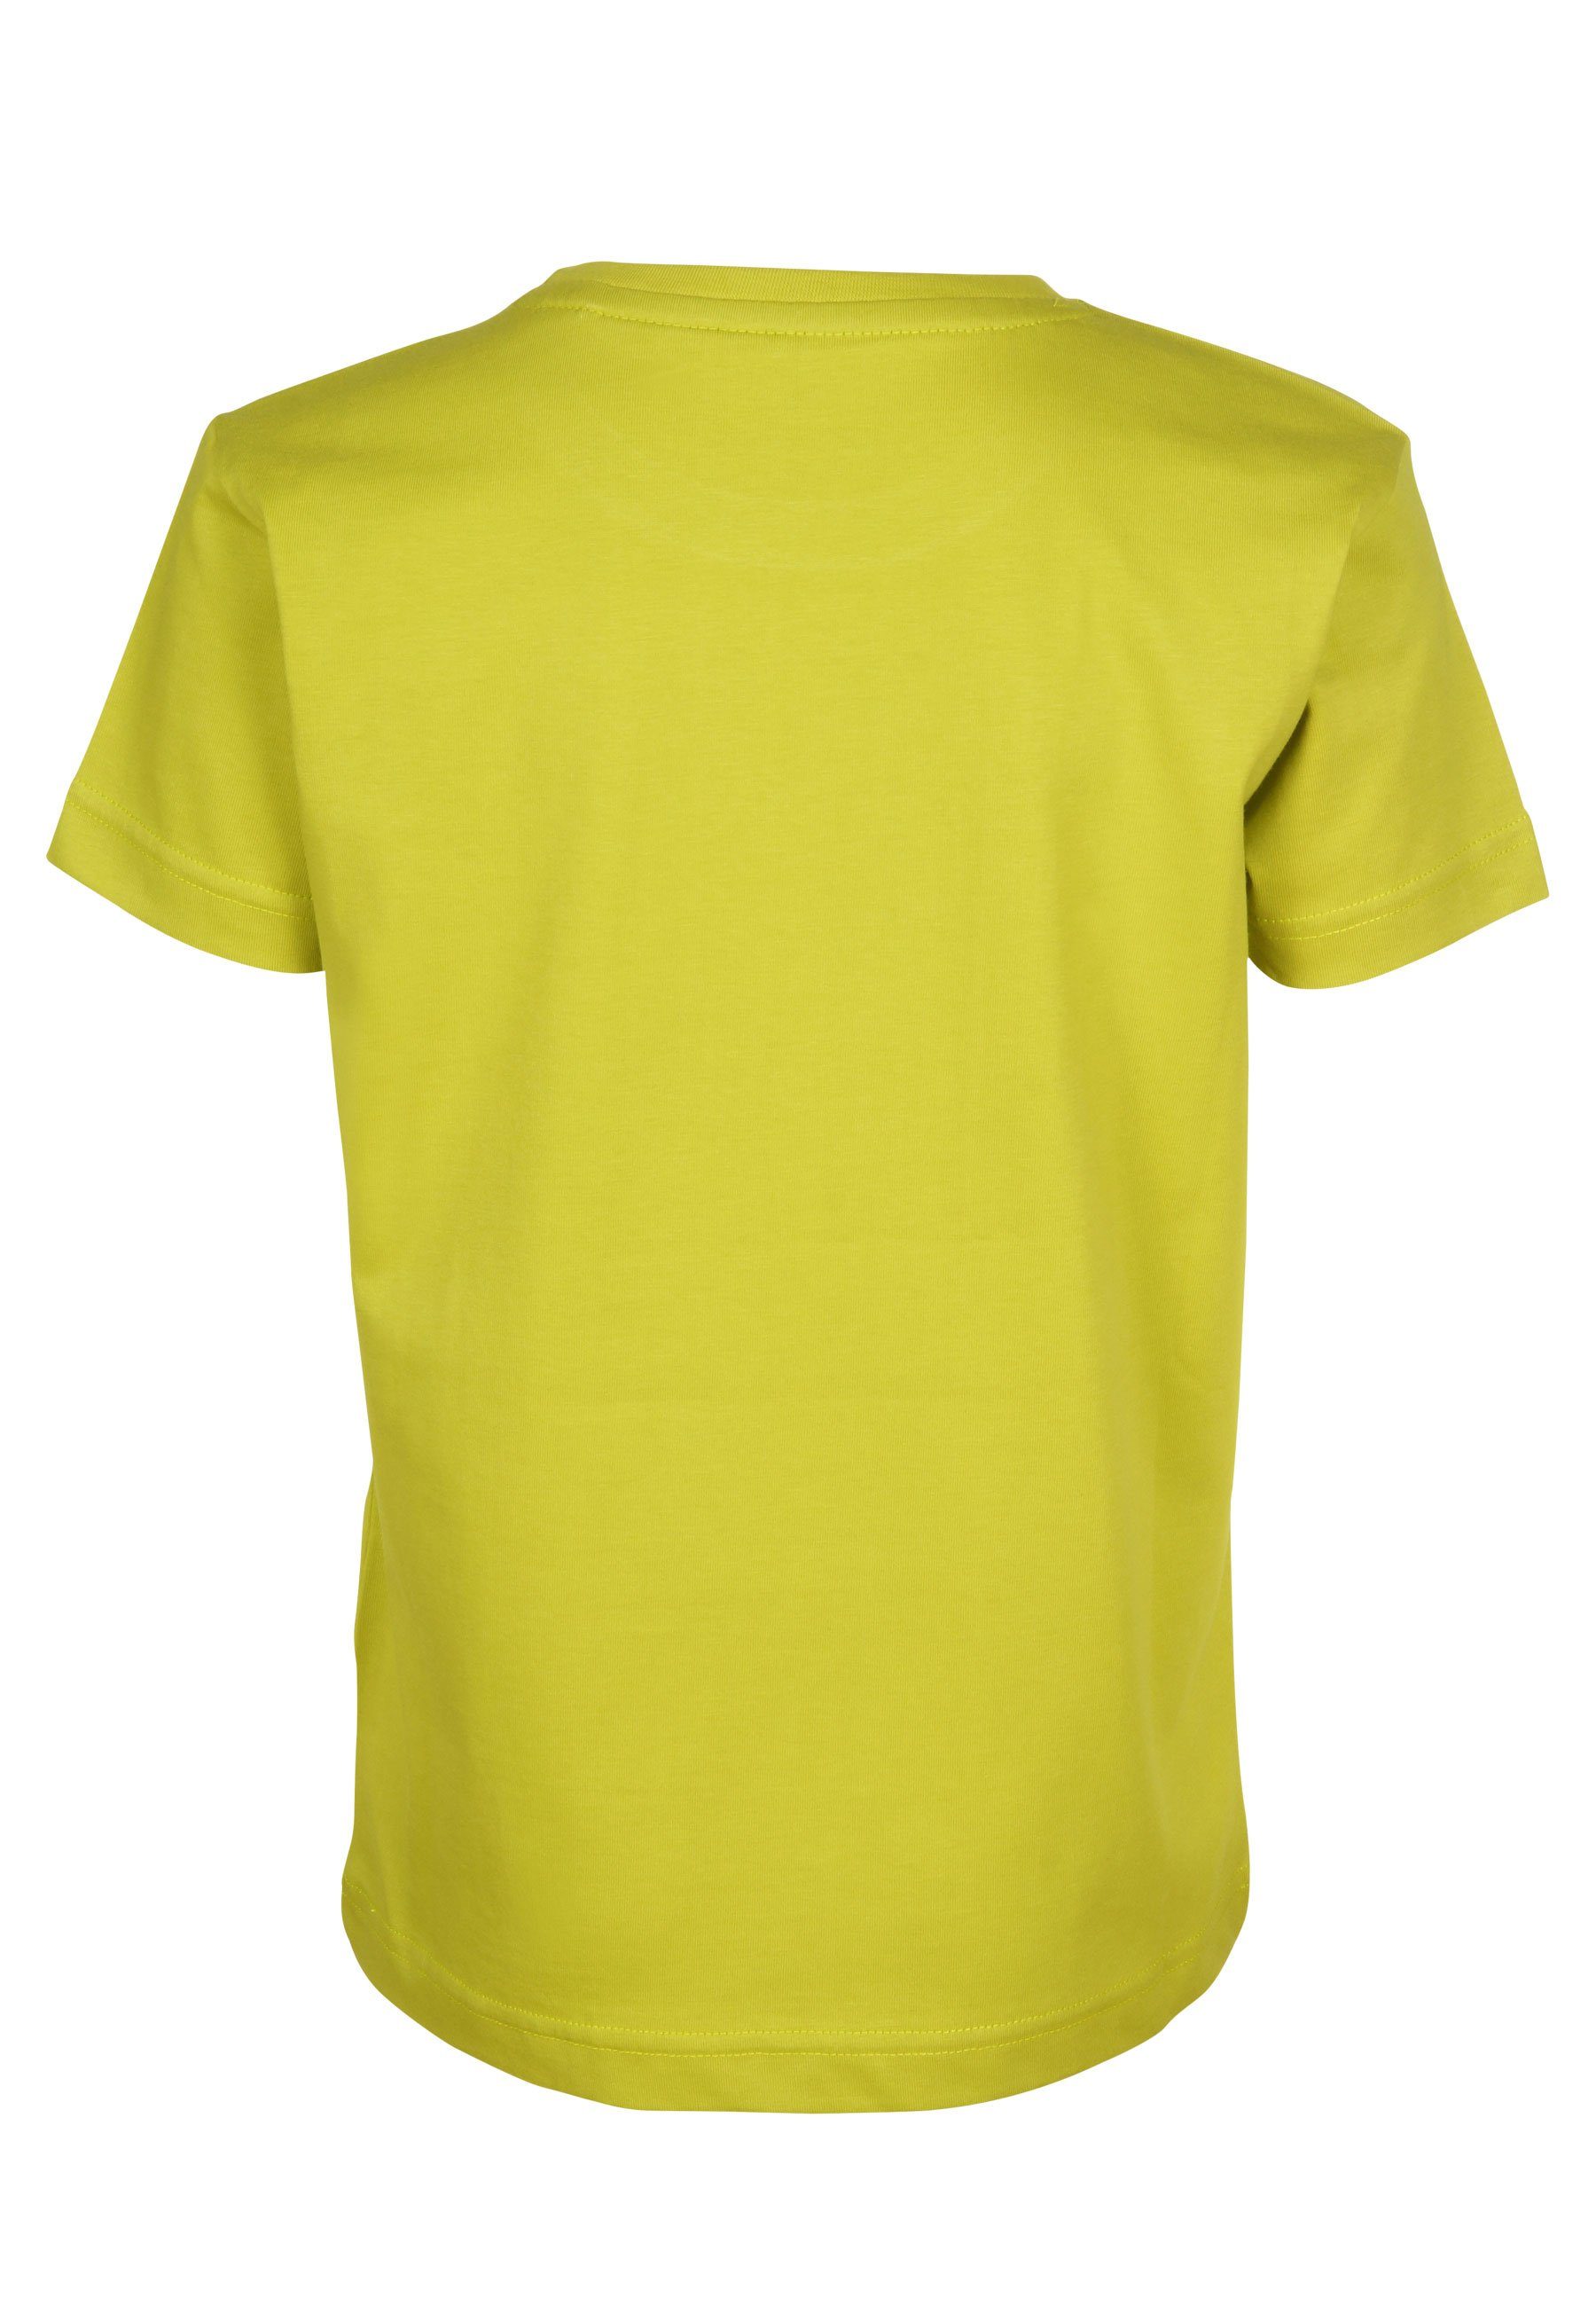 Elkline Brust Schatzinsel citronelle Elch Print Piraten T-Shirt